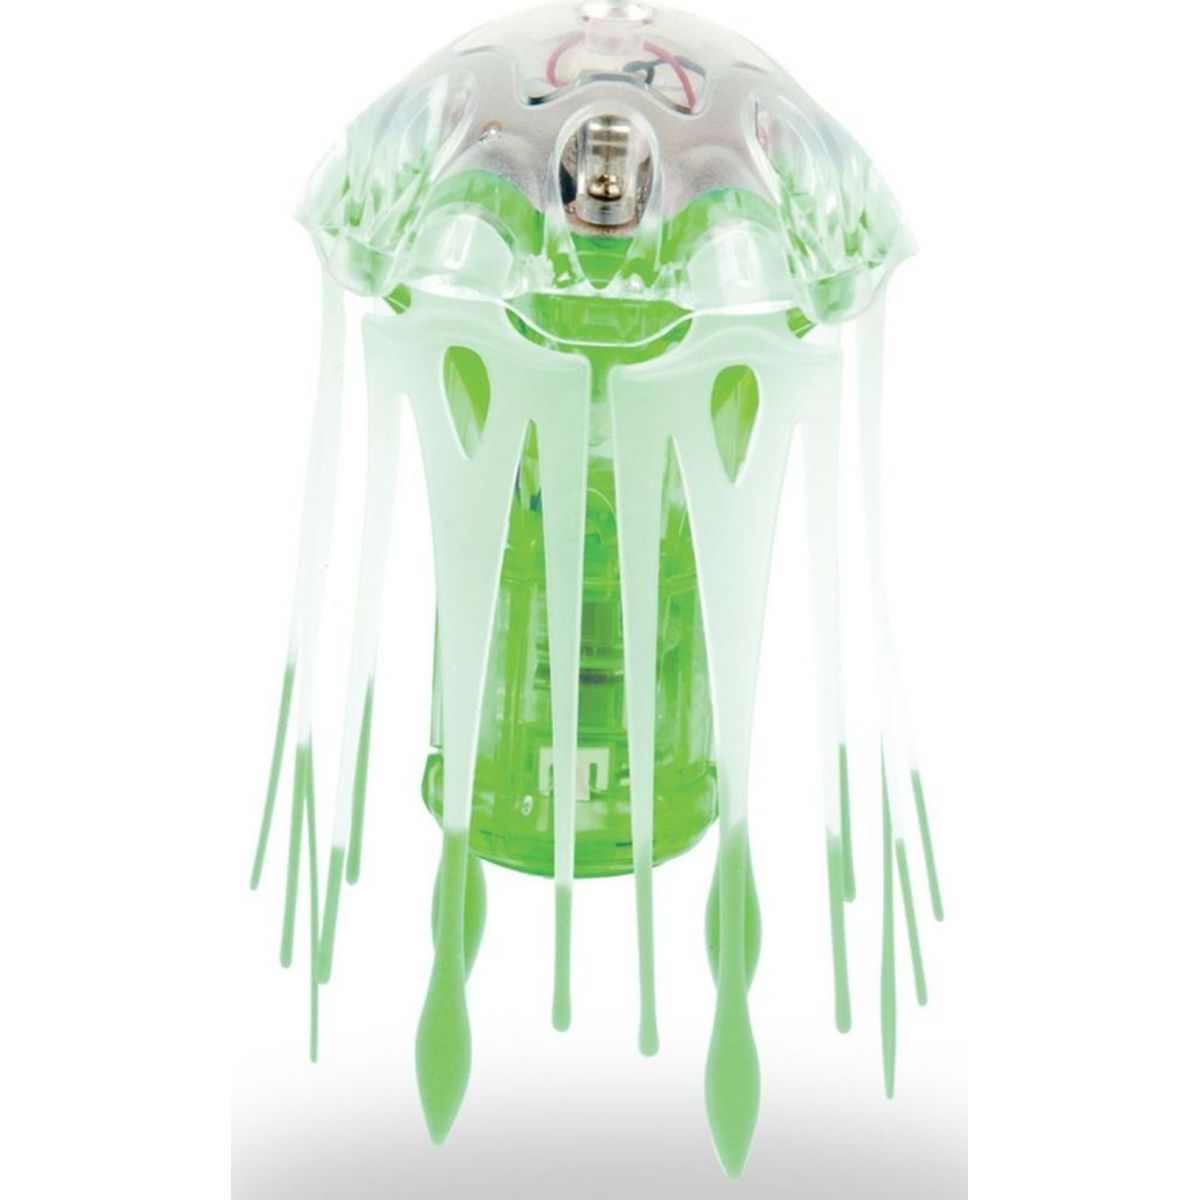 Hexbug Aquabot Medúza - Zelená